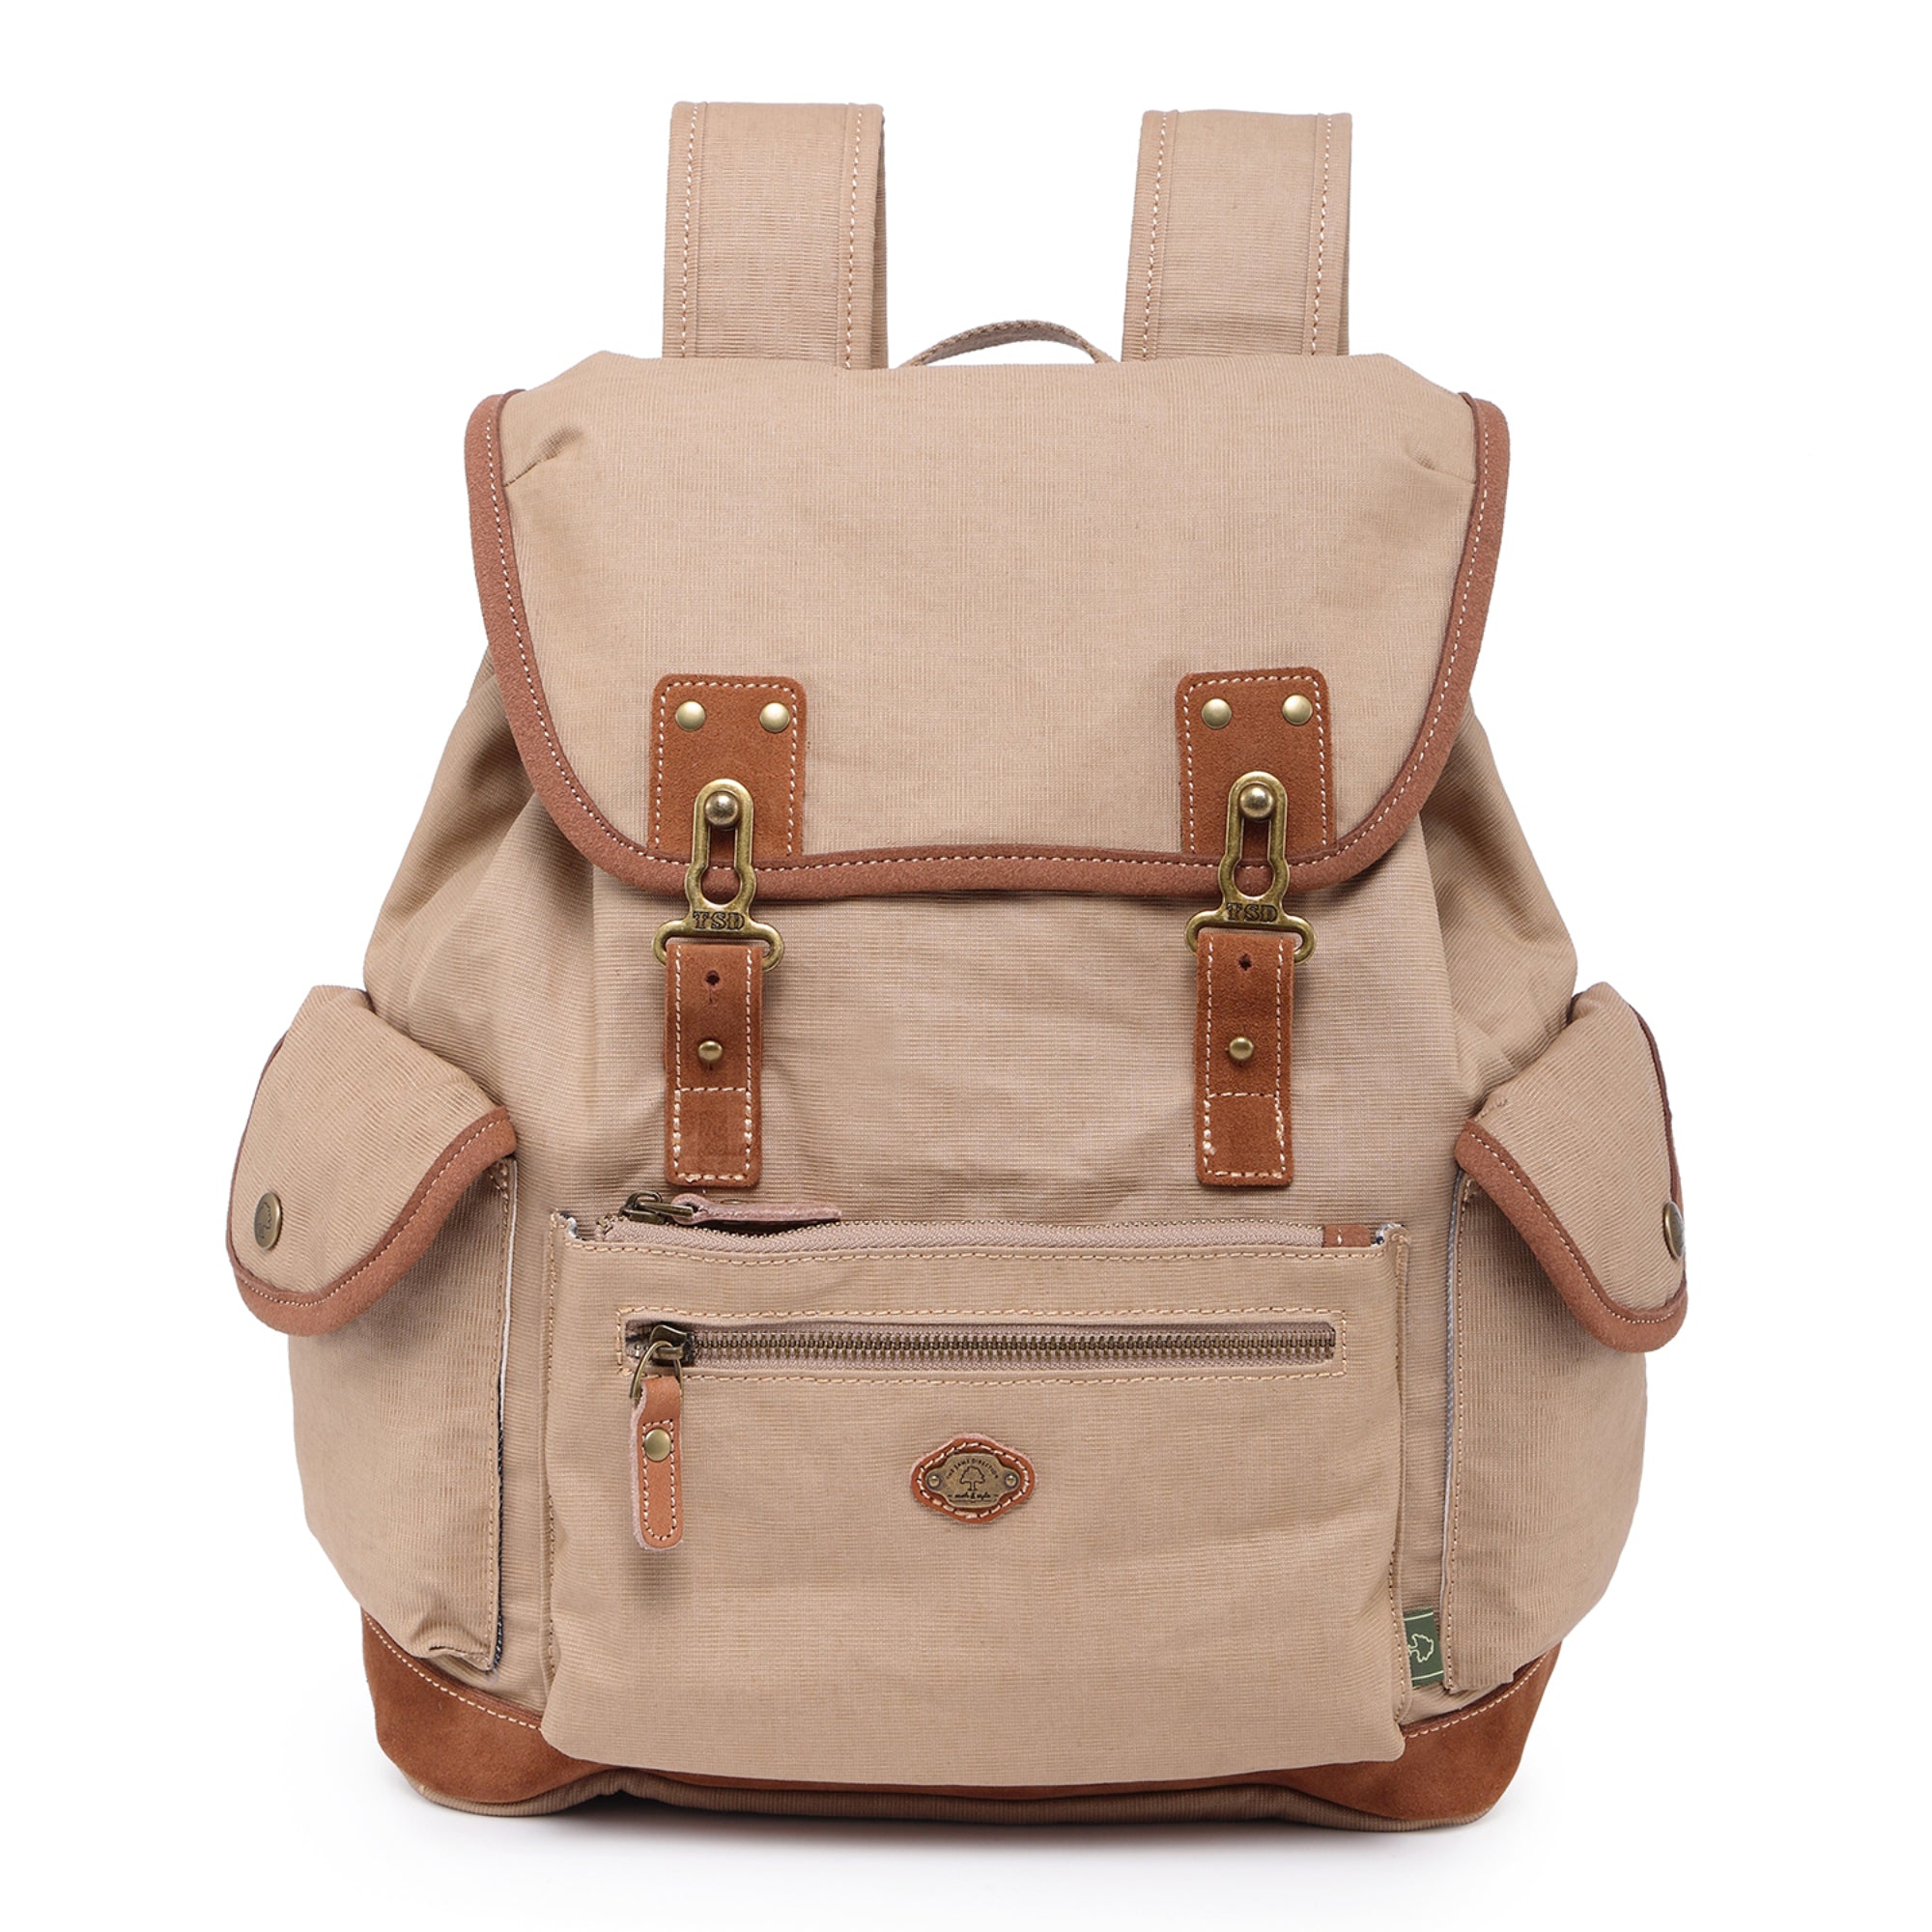 Antin studded Backpack with adjustable strap 2.5 L Backpack Black - Price  in India | Flipkart.com